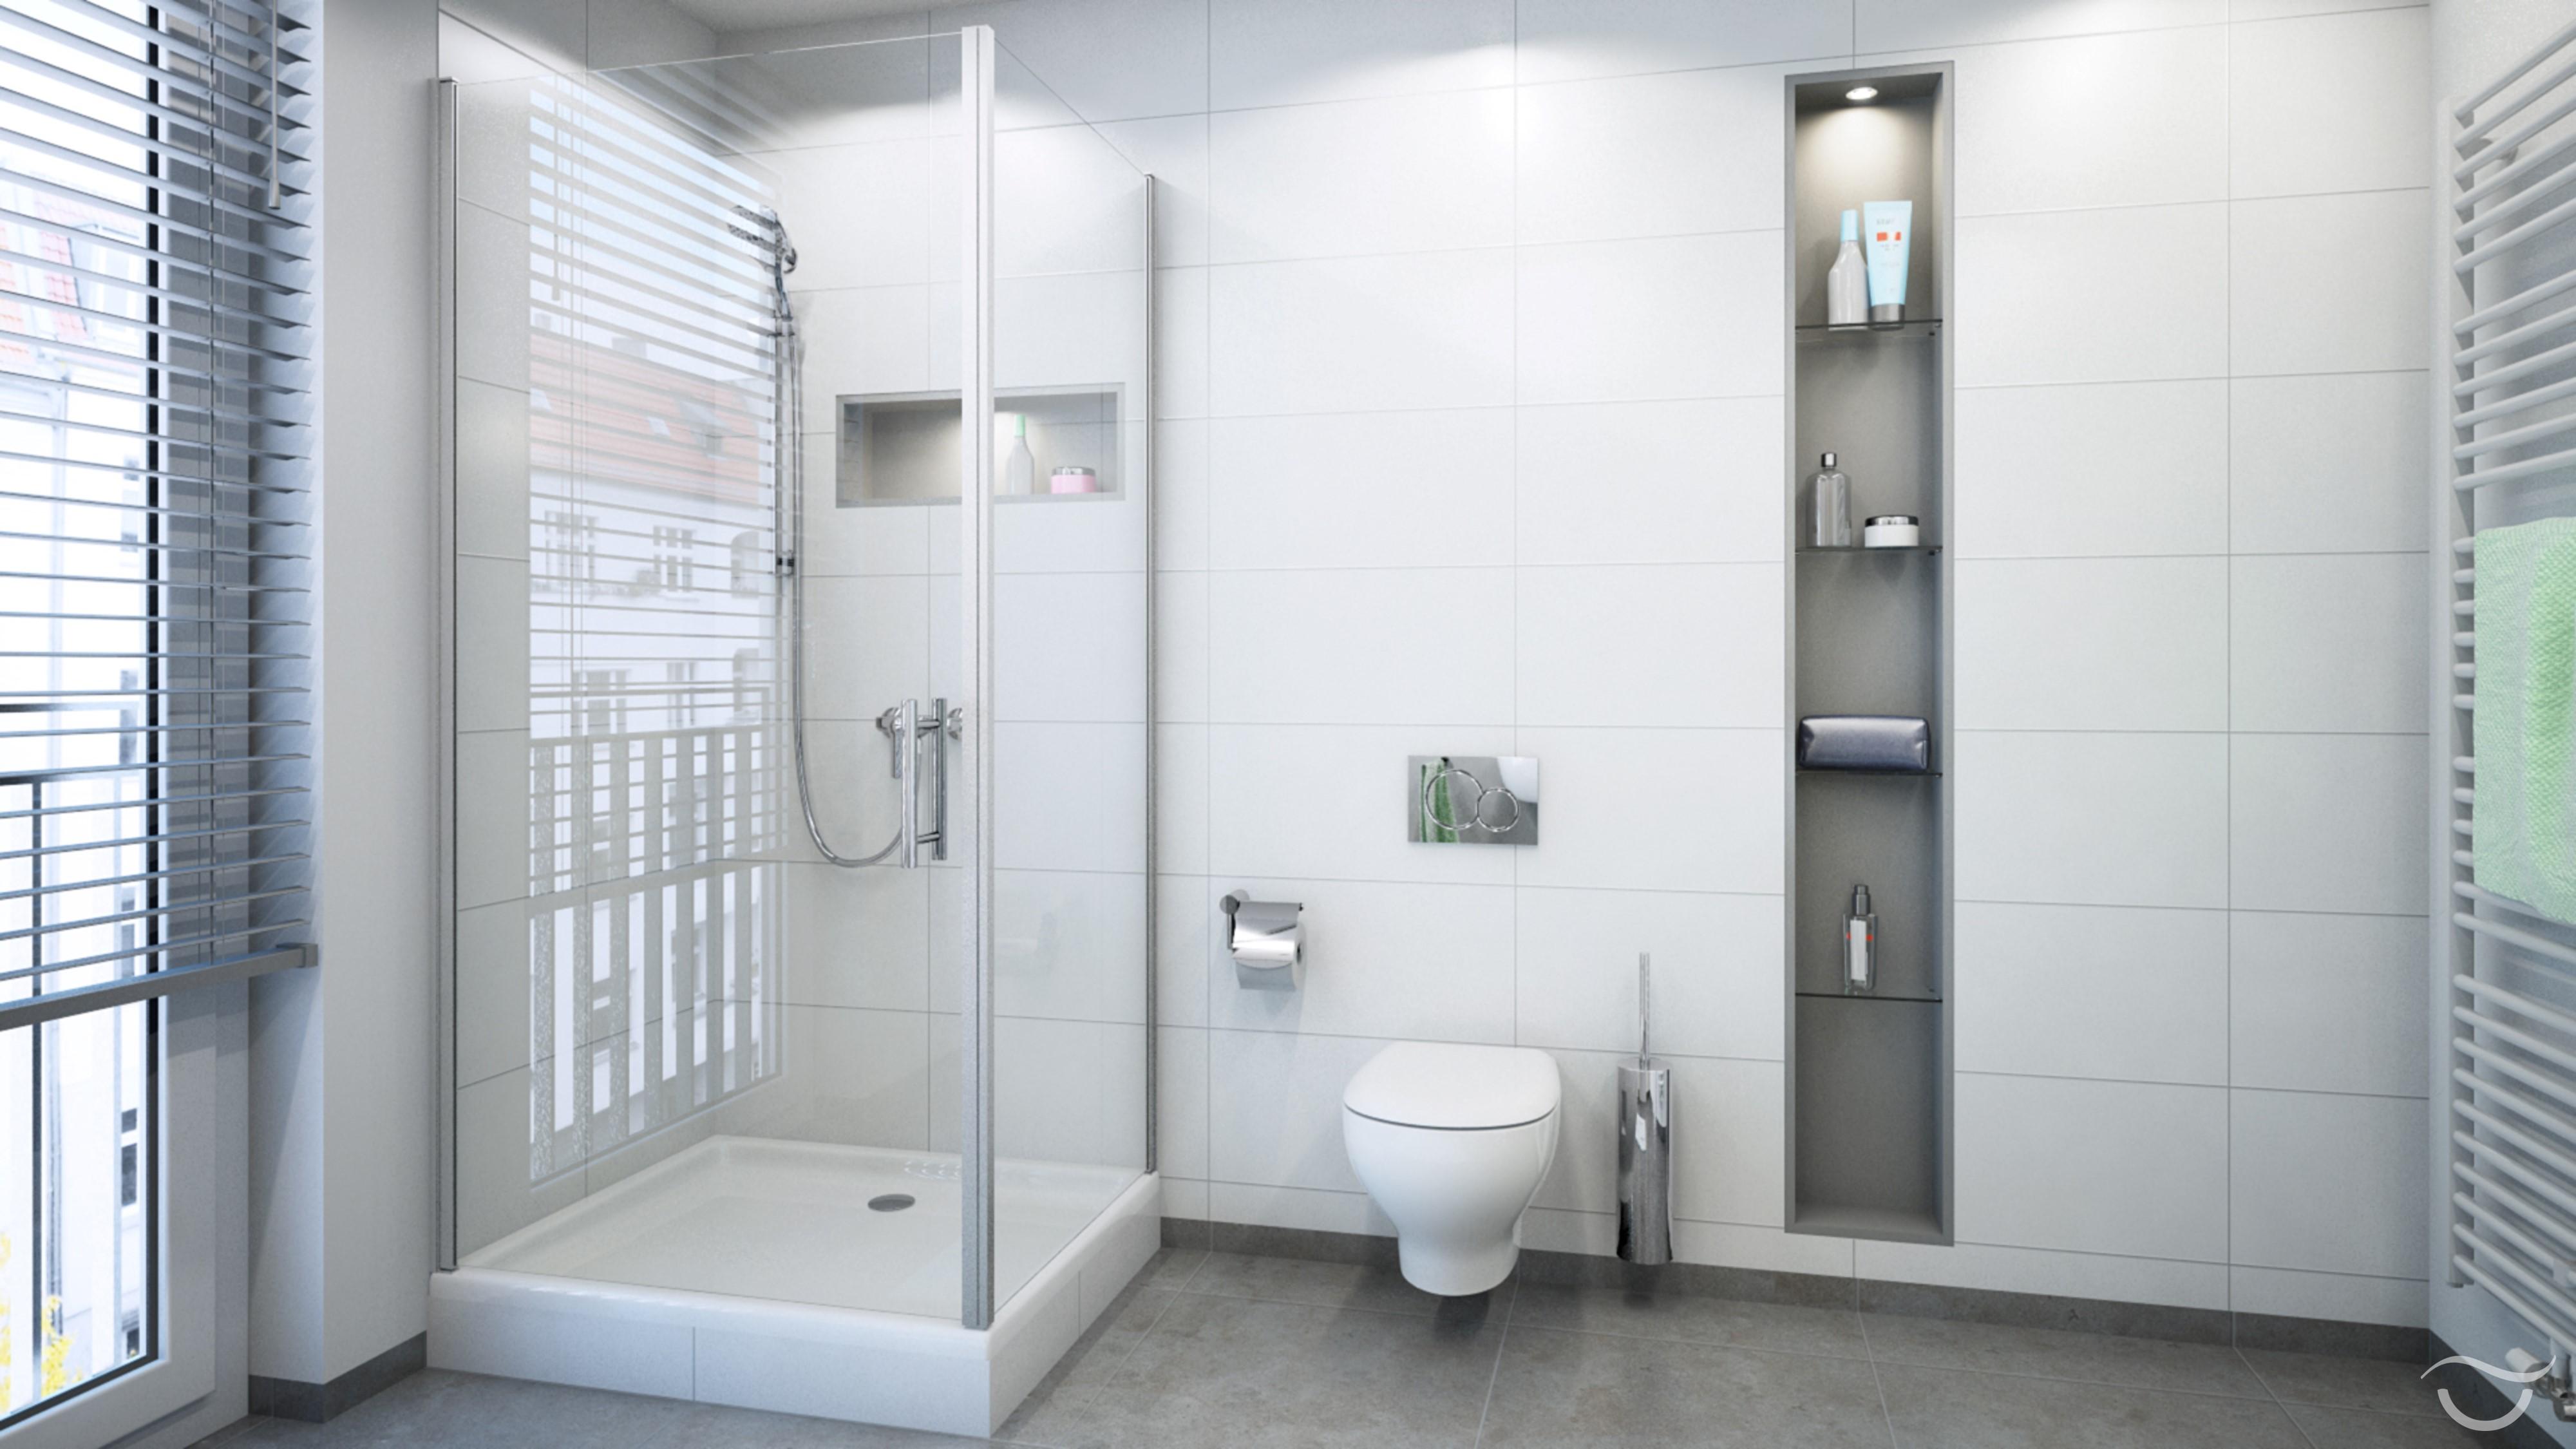 Schönes helles Badezimmer #dusche ©Banovo GmbH